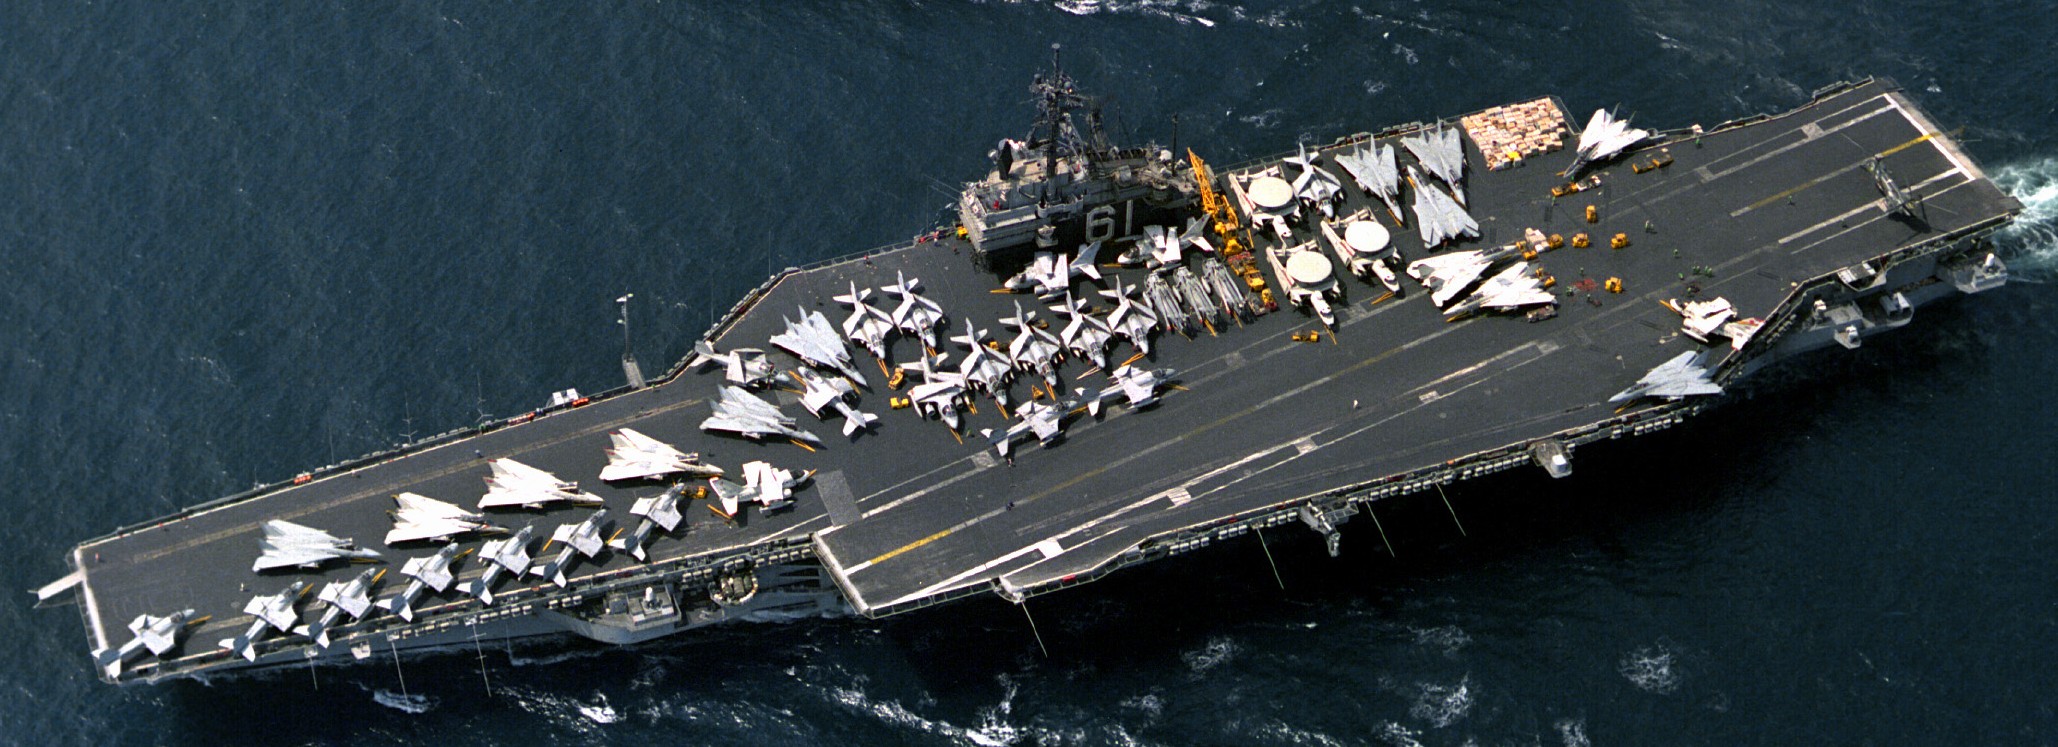 cv-61 uss ranger forrestal class aircraft carrier air wing cvw-2 us navy operation desert shield storm 1991 99